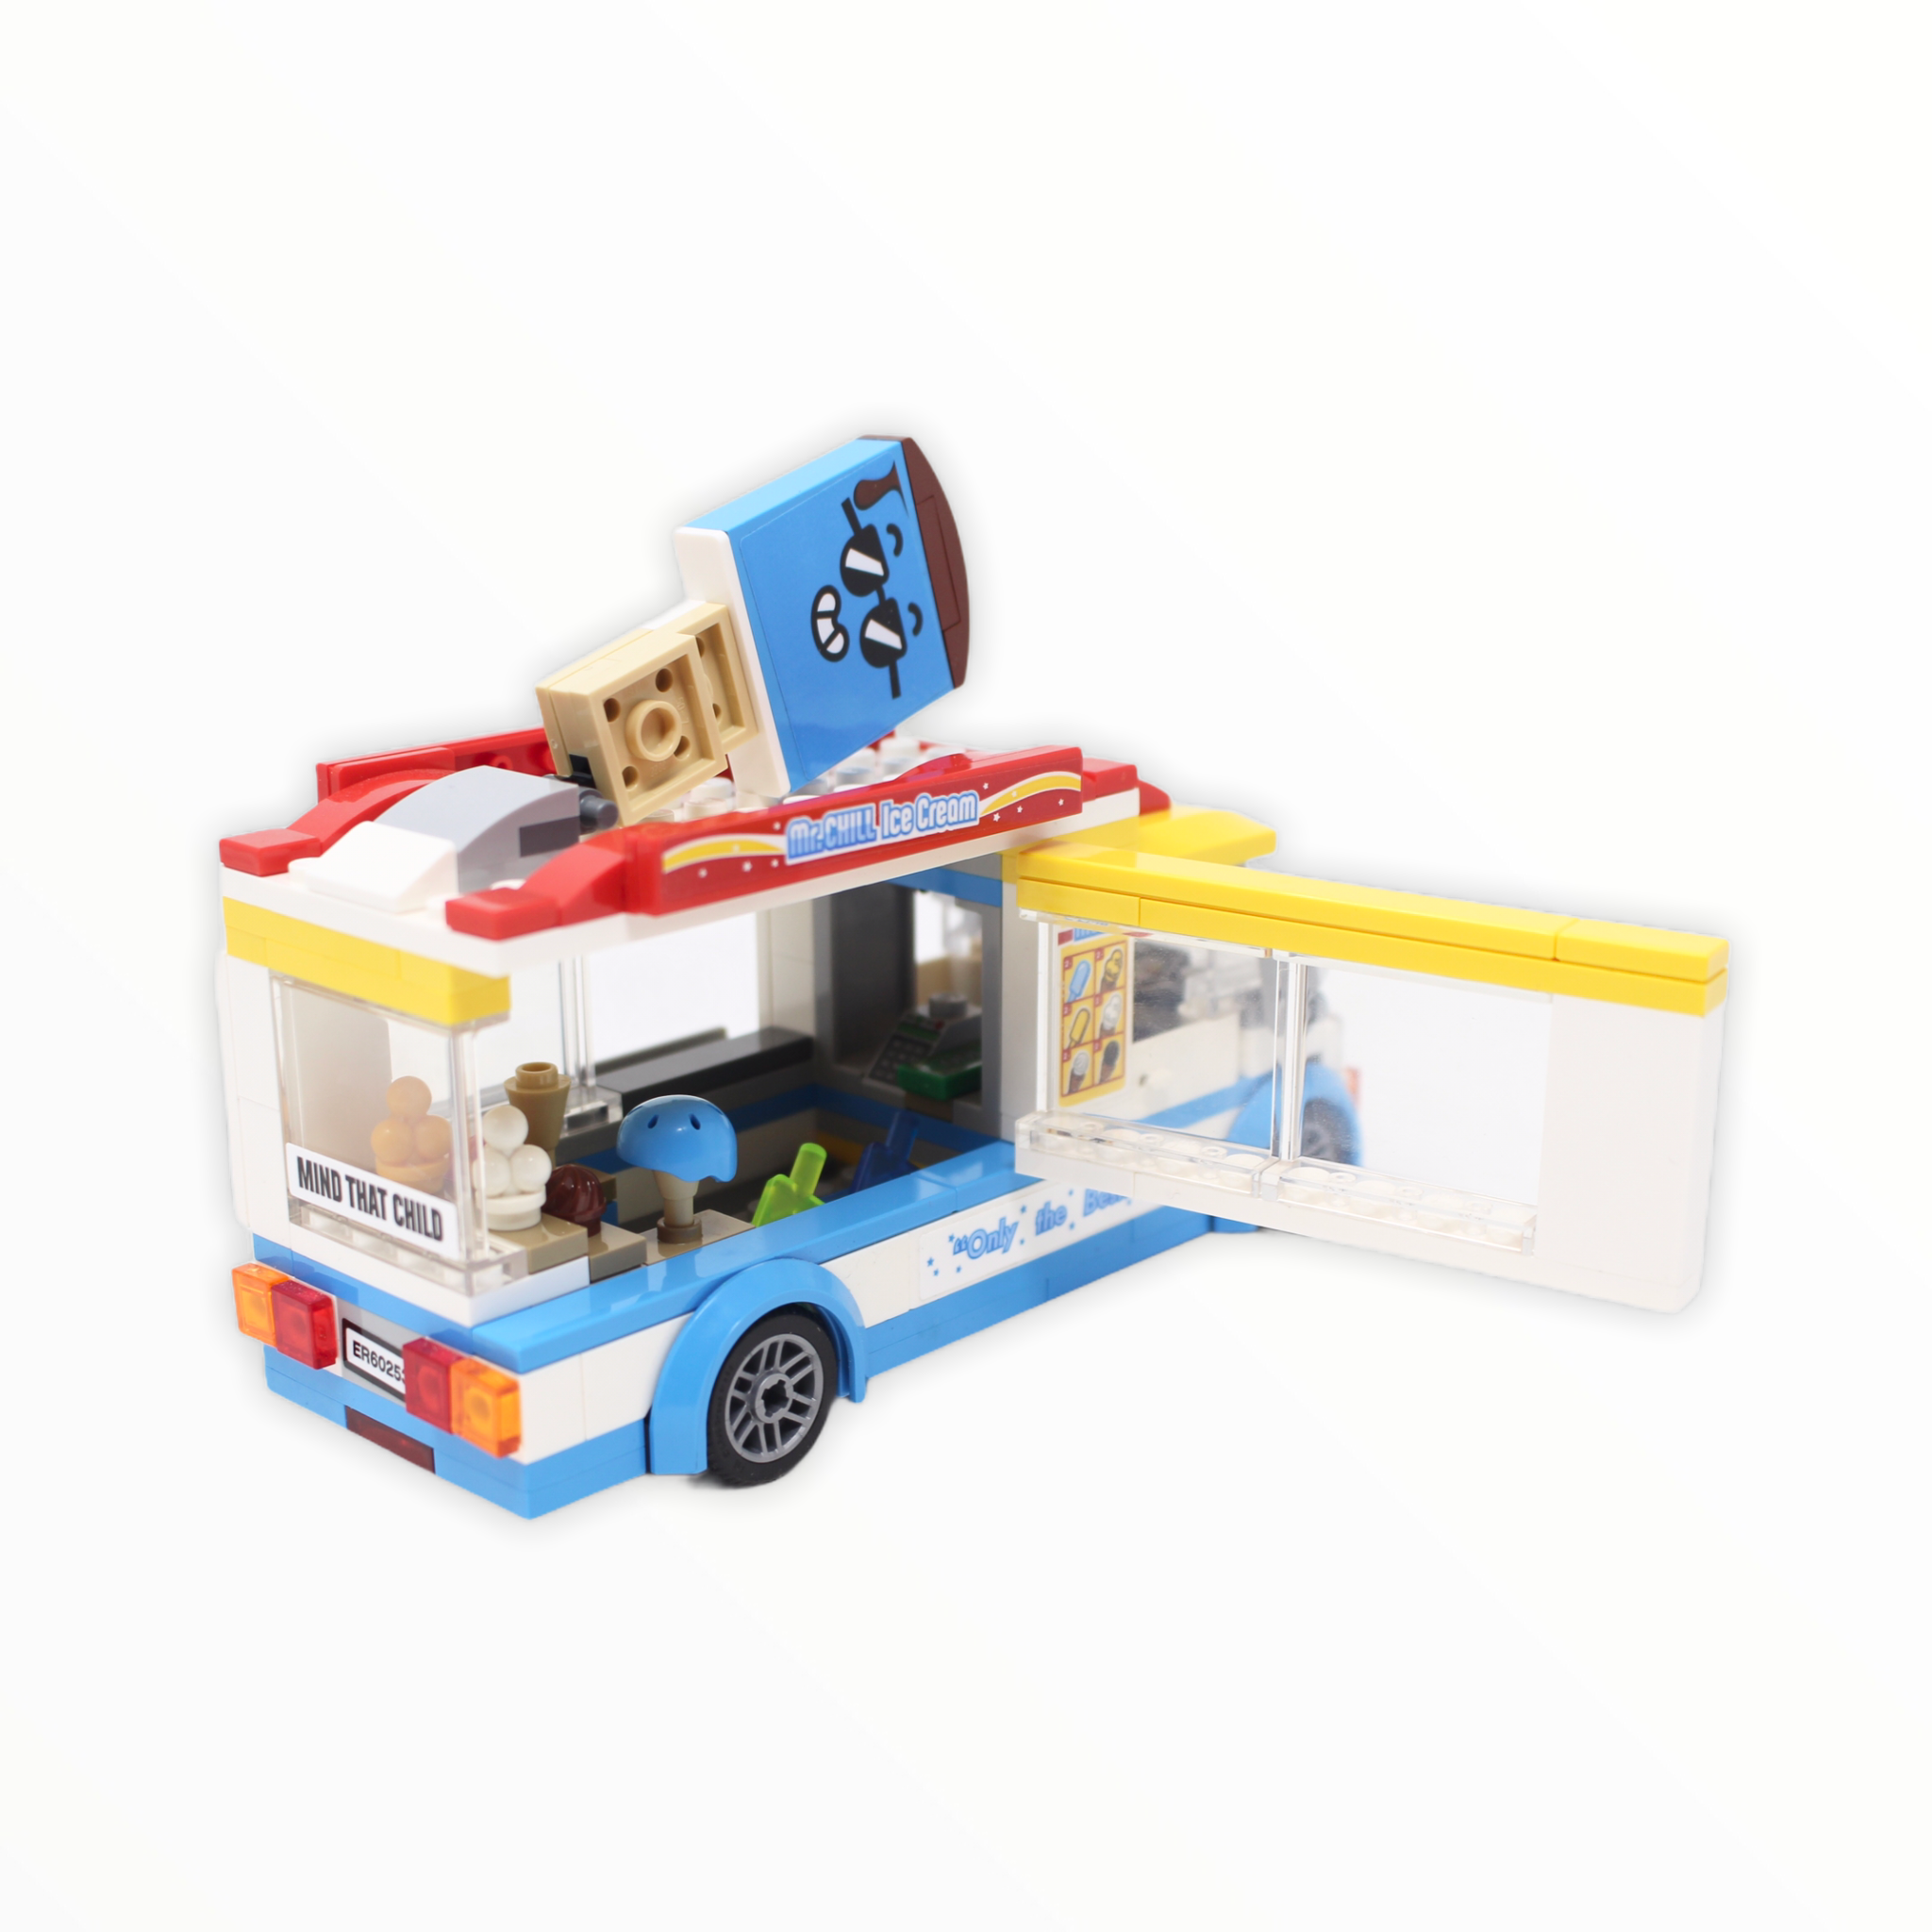 Used Set 60253 City Ice-Cream Truck